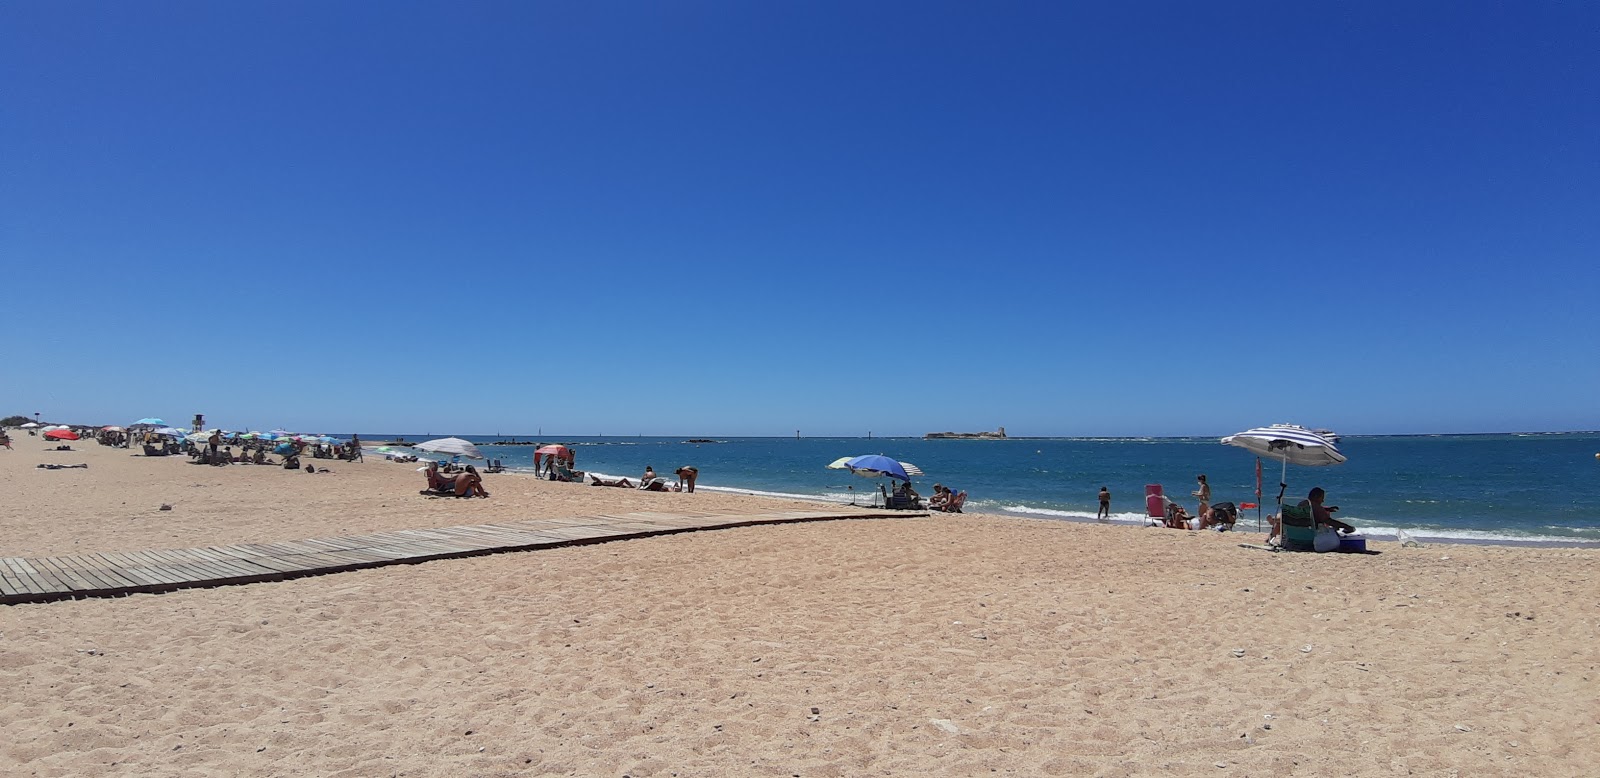 Playa de Sancti-Petri'in fotoğrafı parlak kum yüzey ile